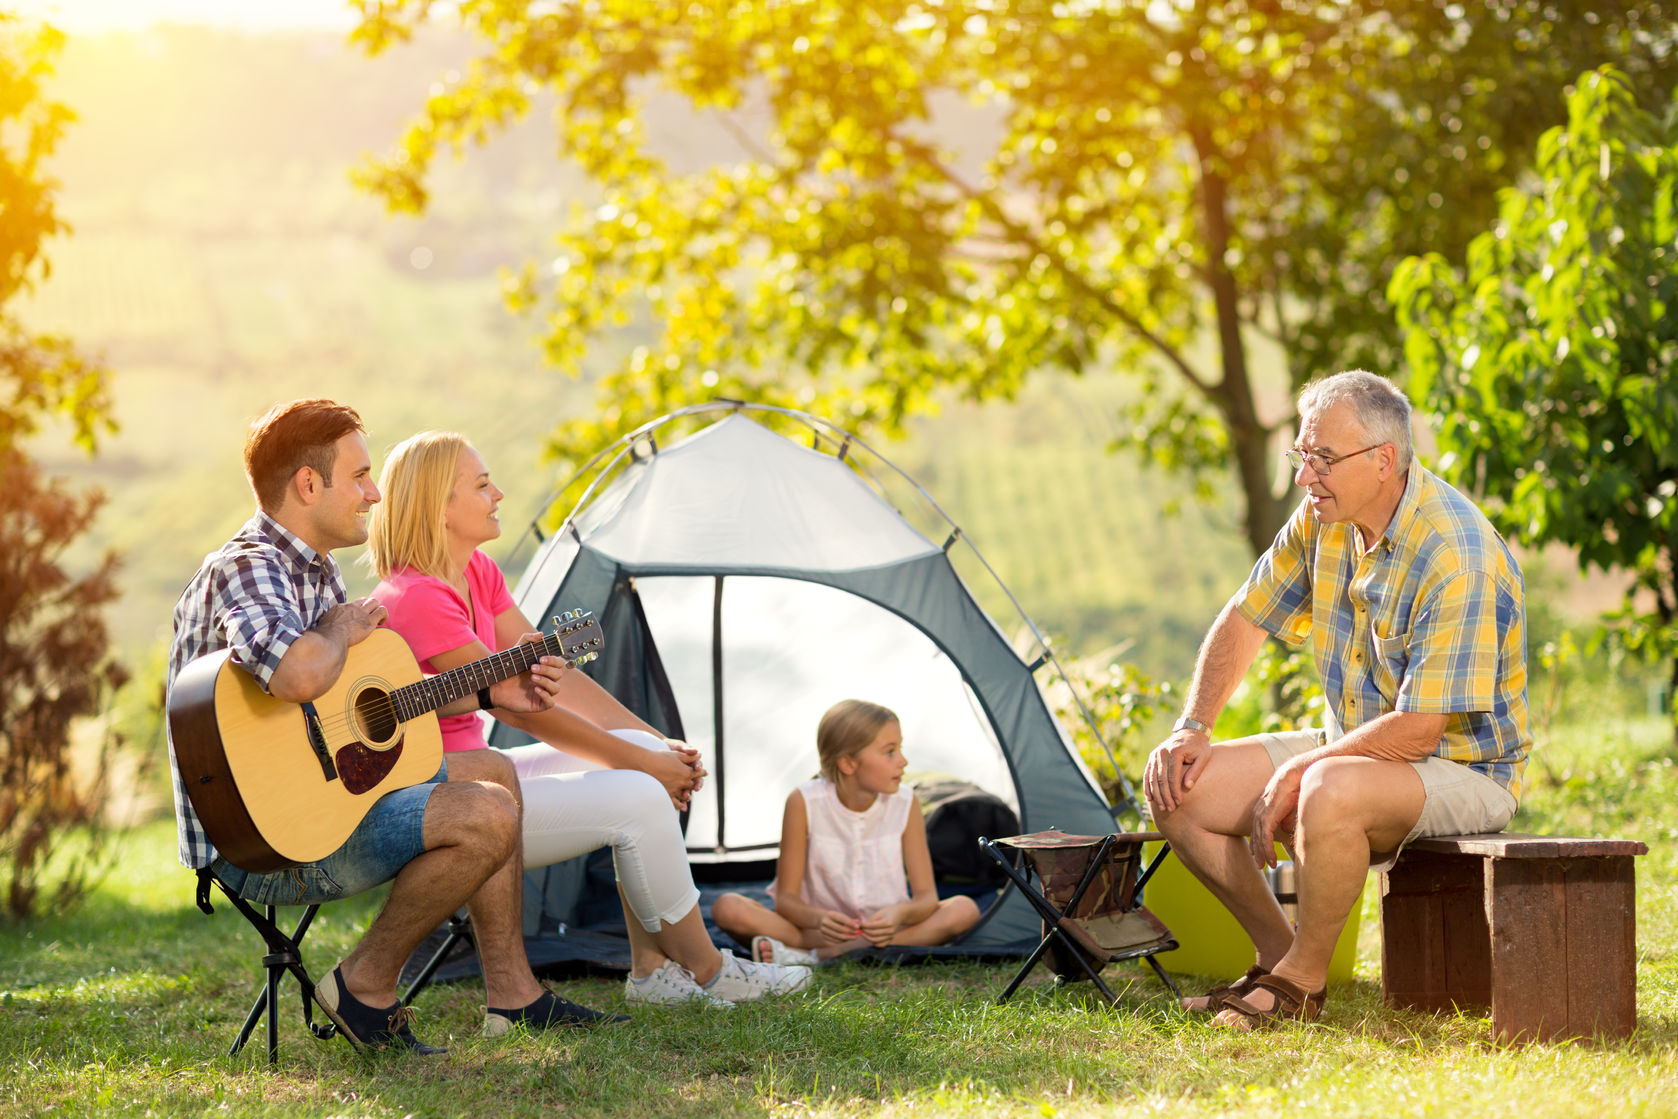 Camping with dad. Семья на природе с палаткой. Кемпинг с семьей. Семья в палатке. Дети в палатке на природе.